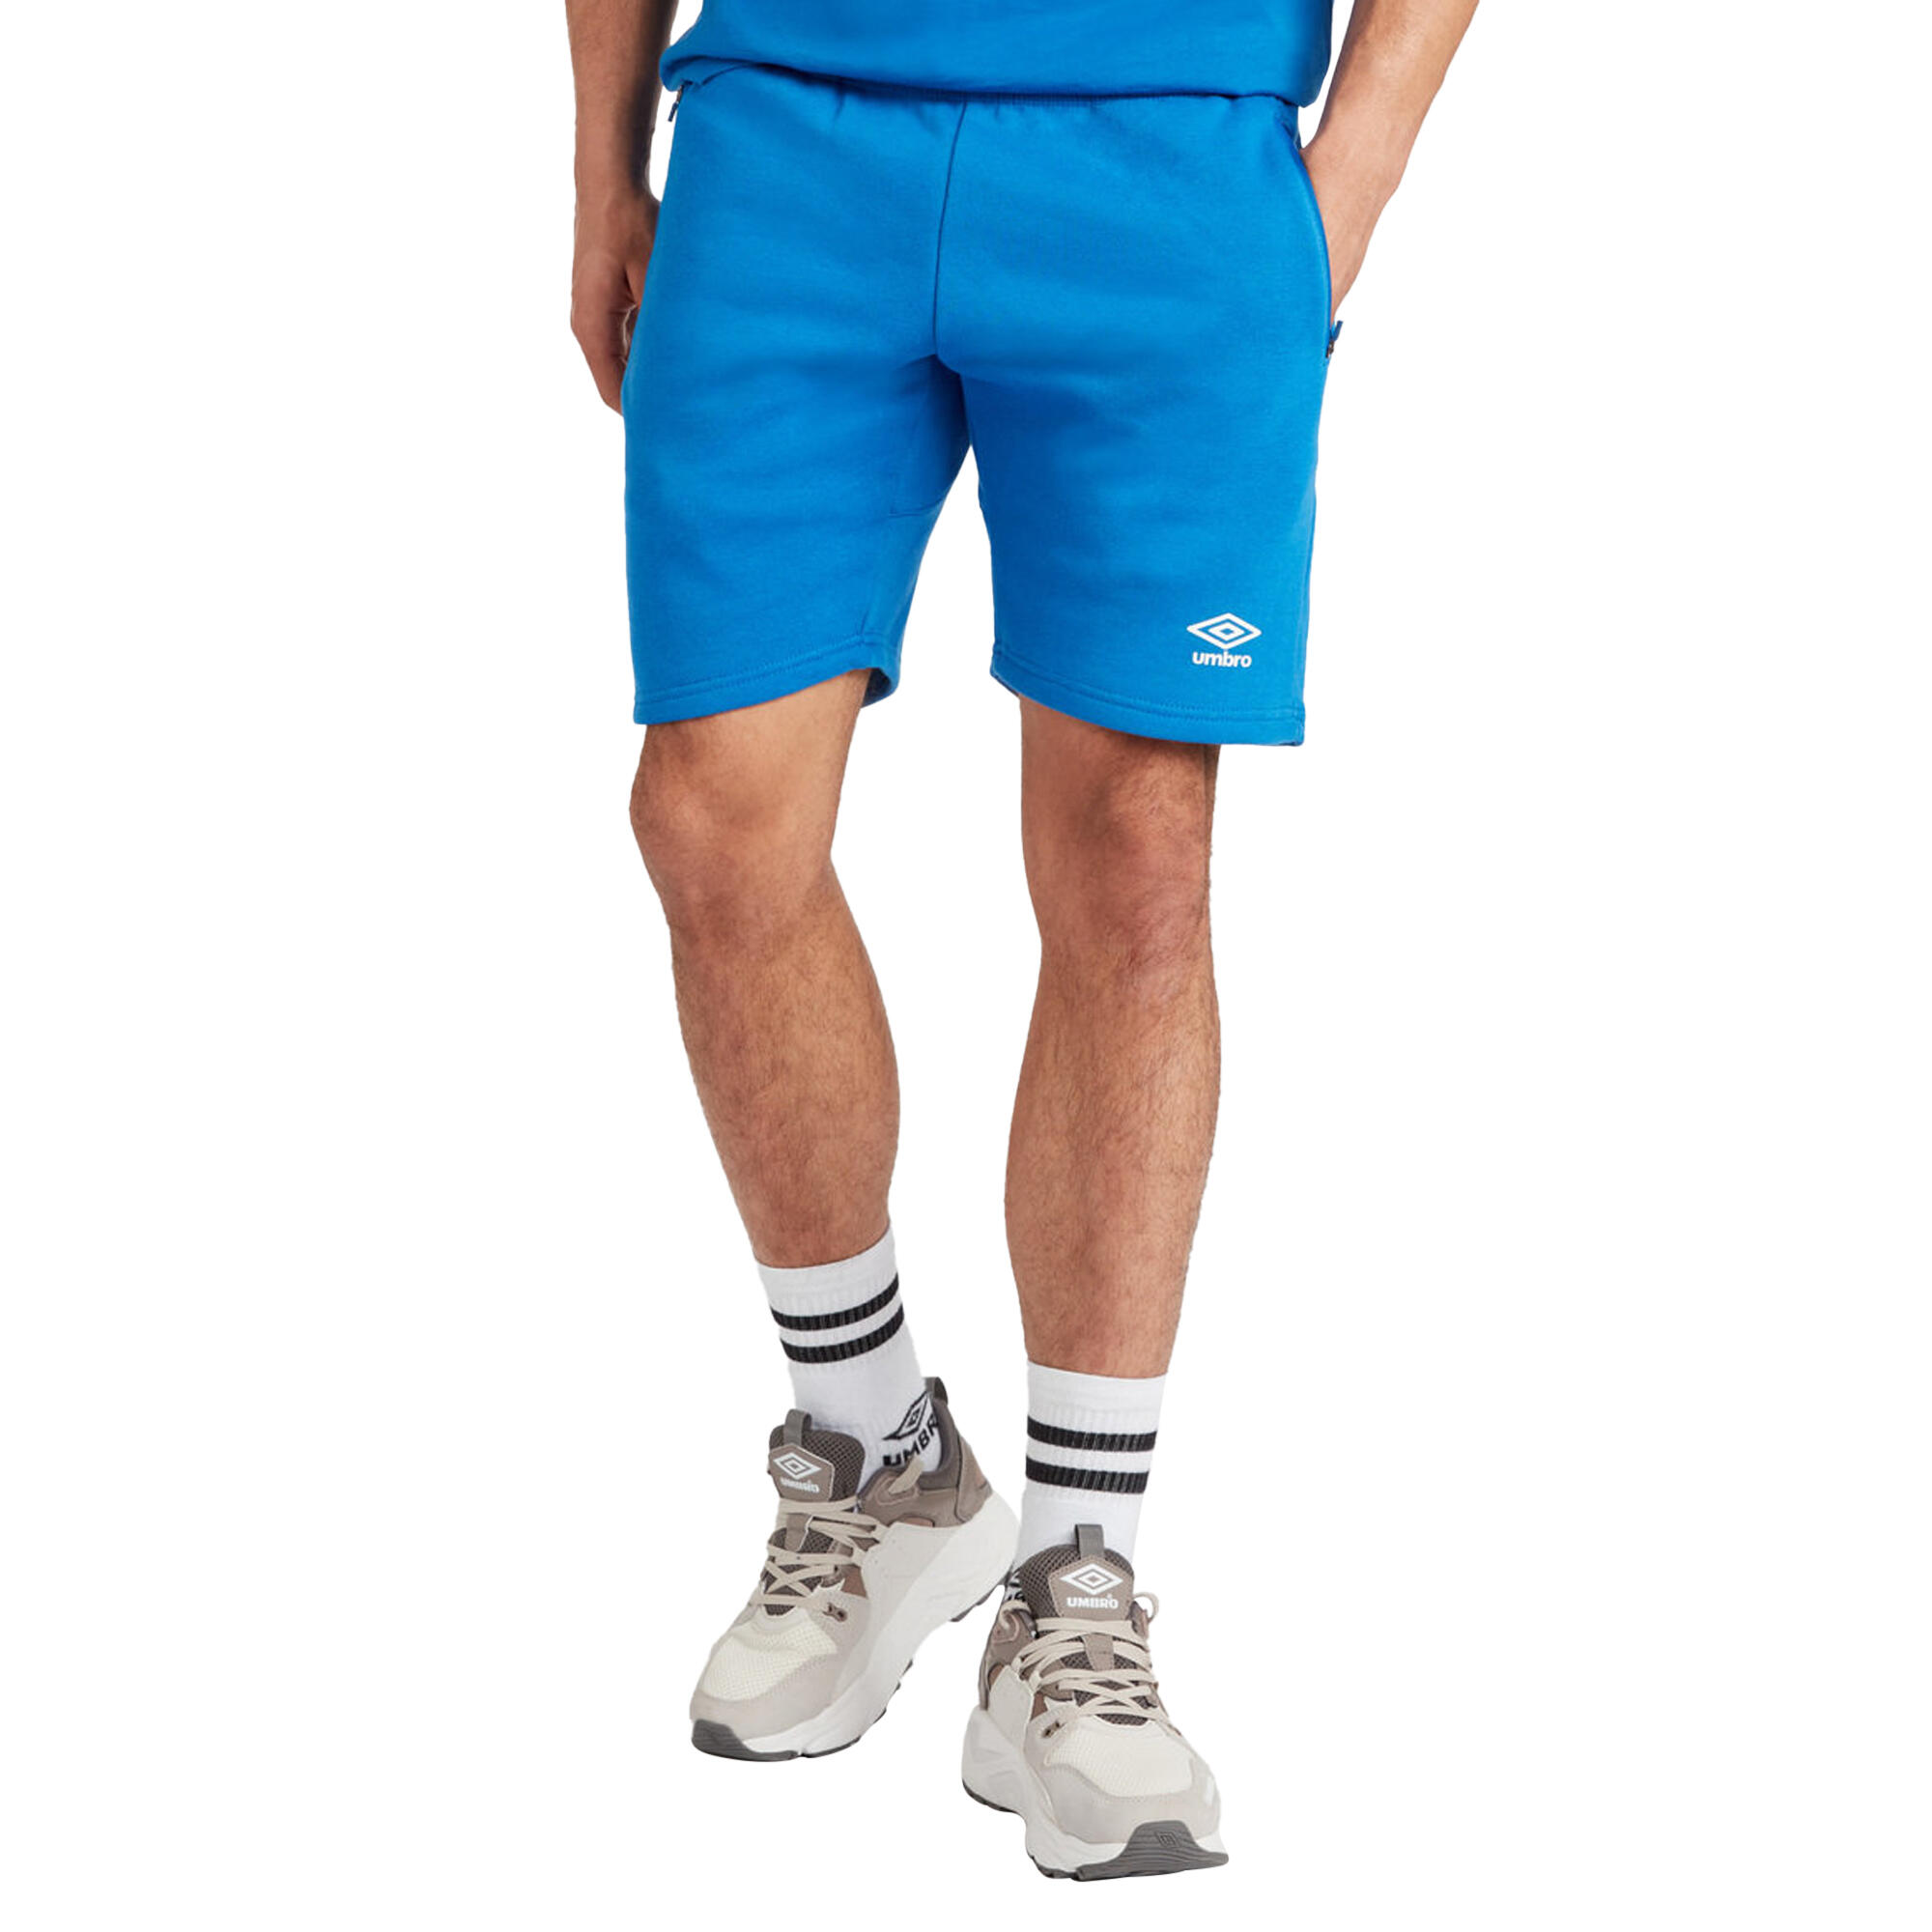 Mens Club Leisure Shorts (Royal Blue/White) 4/4